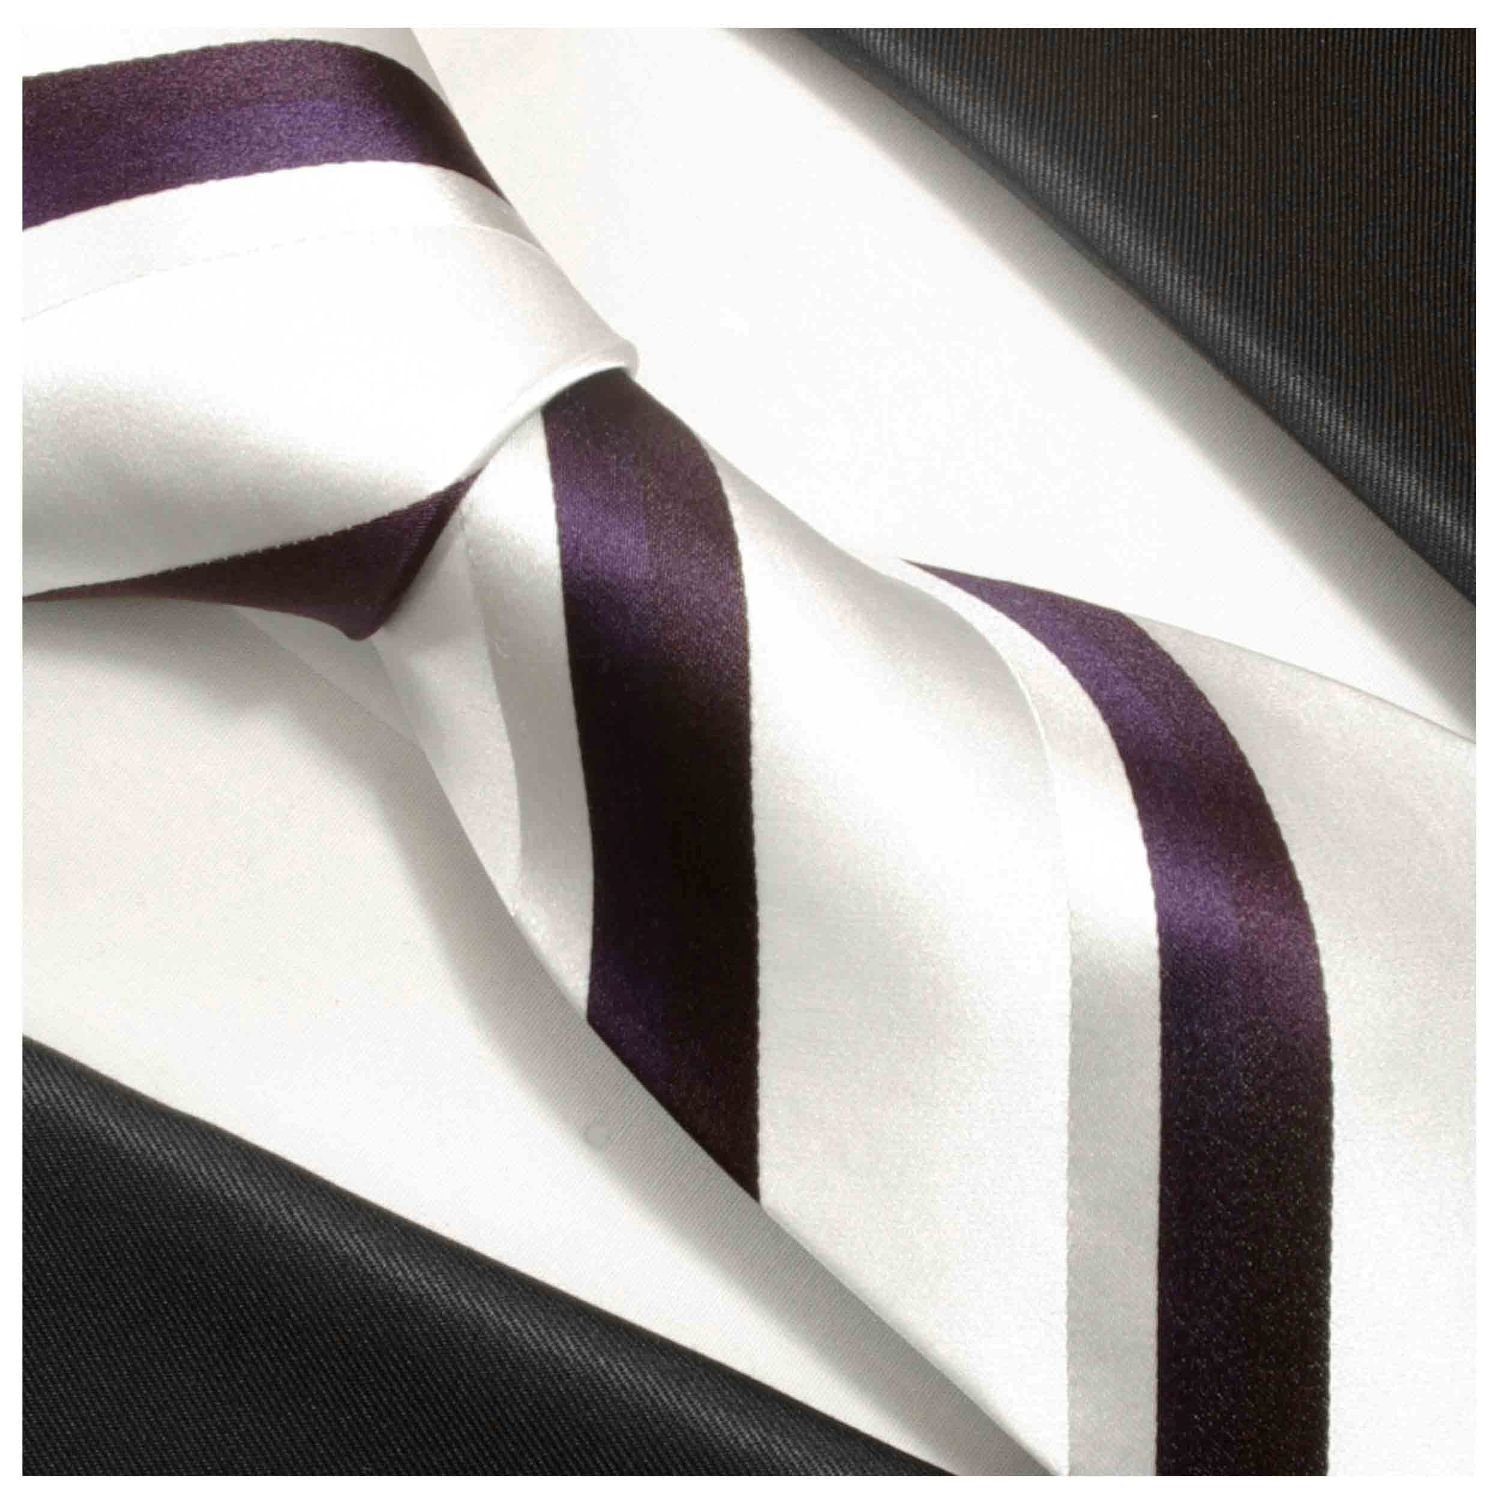 Herren Krawatten Paul Malone Krawatte Moderne Herren Seidenkrawatte gestreift 100% Seide Schmal (6cm), weiß silber lila 944